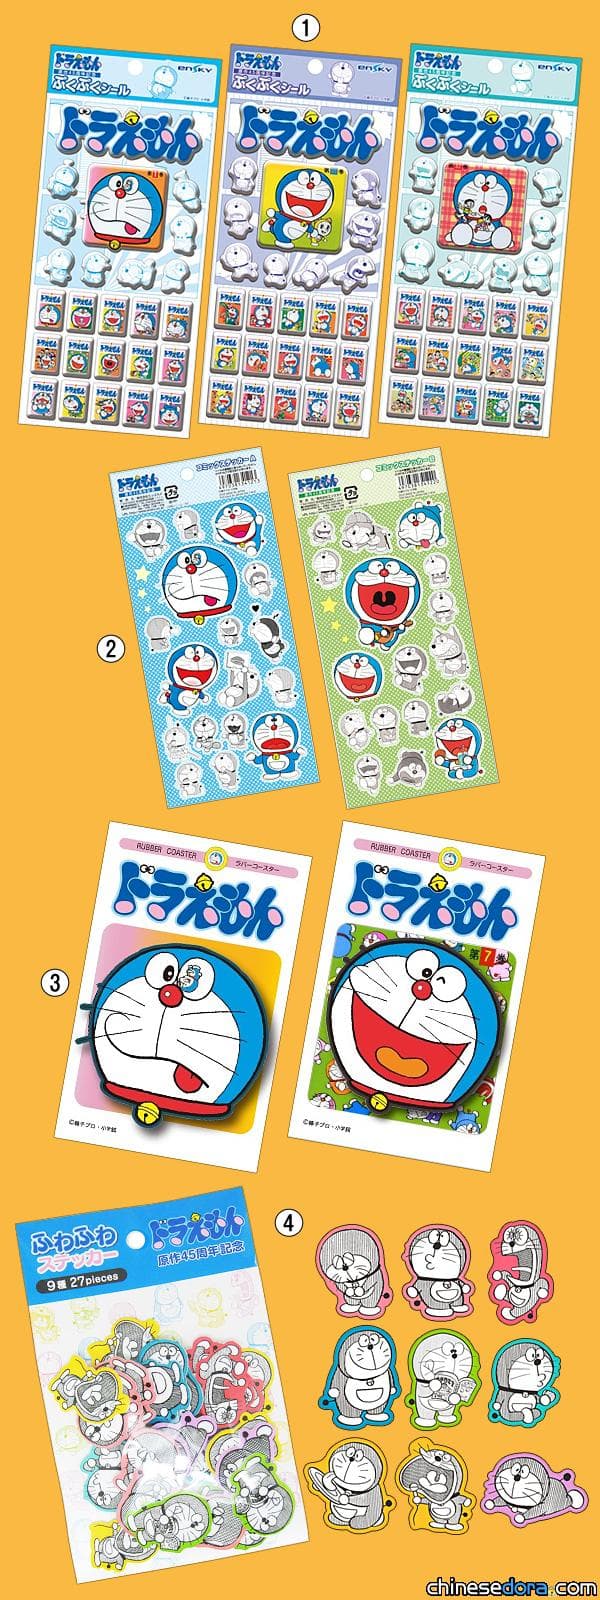 [日本] 紀念哆啦A夢漫畫原作45週年 系列主題商品第2彈即將推出